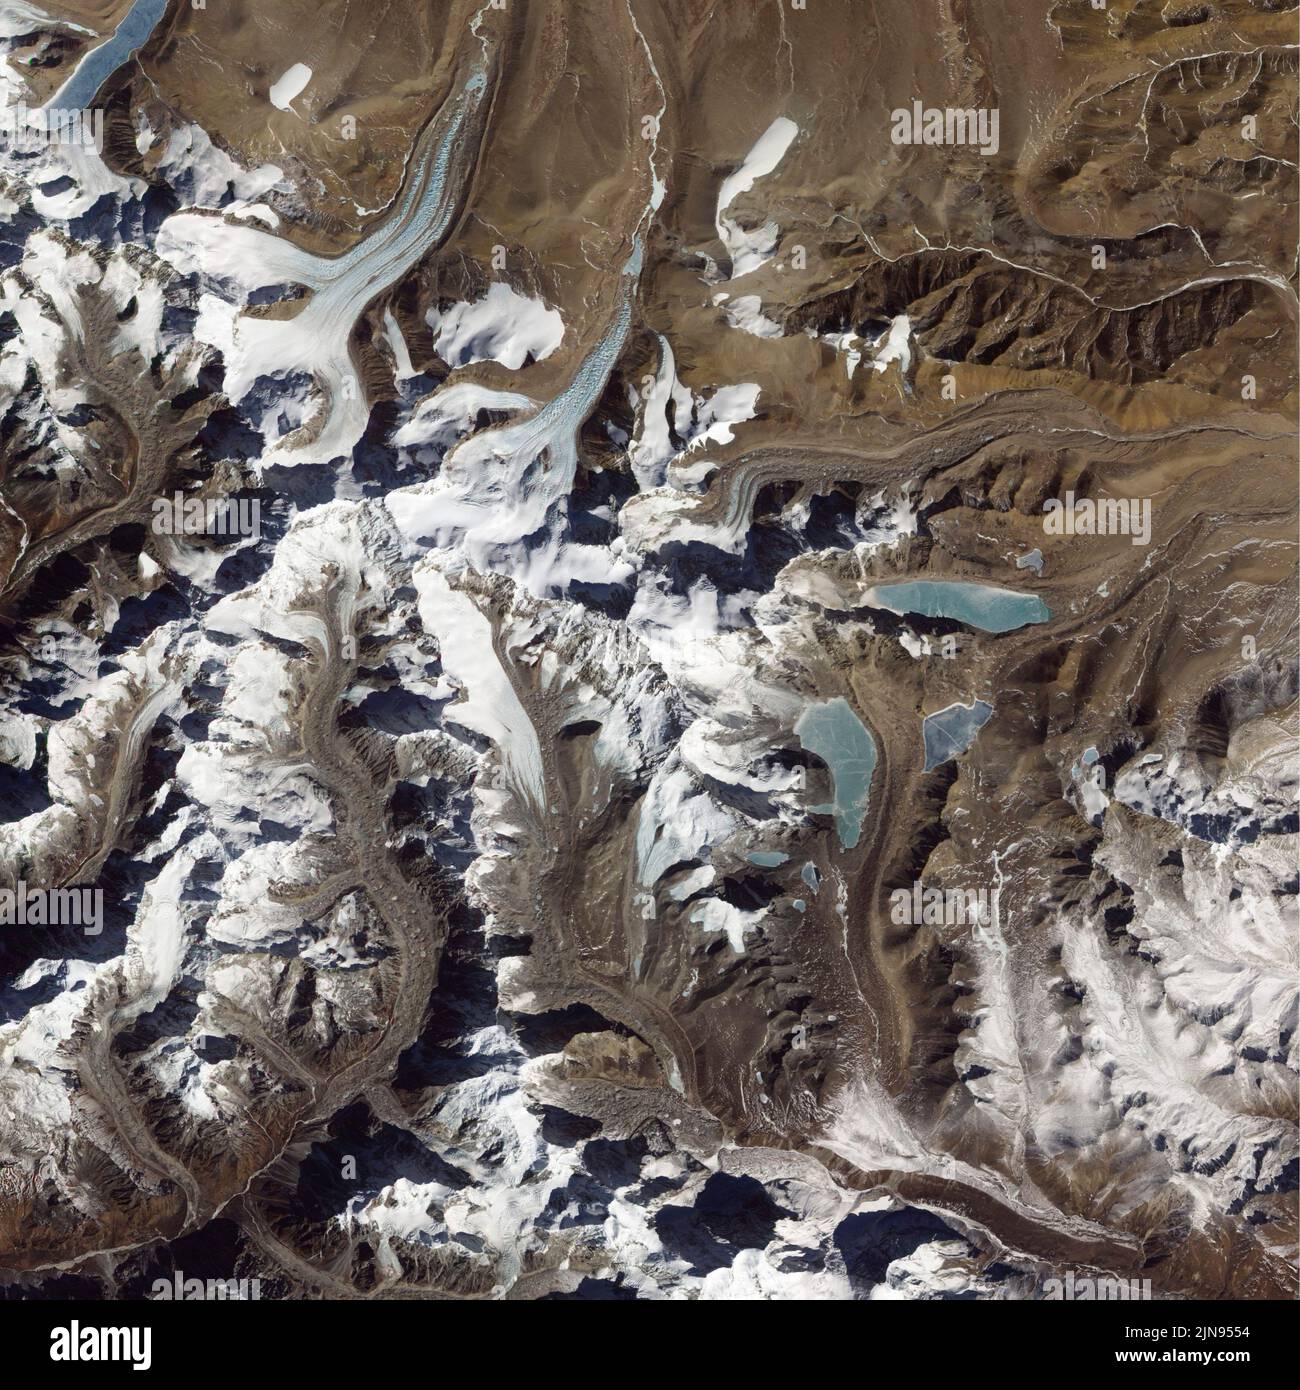 TIBET - 03. Februar 2011 - Satellitenbild des Mount Shishapangma in Tibet - einer von acht Gipfeln über 8000 Meter - Foto: Geopix/NASA Stockfoto